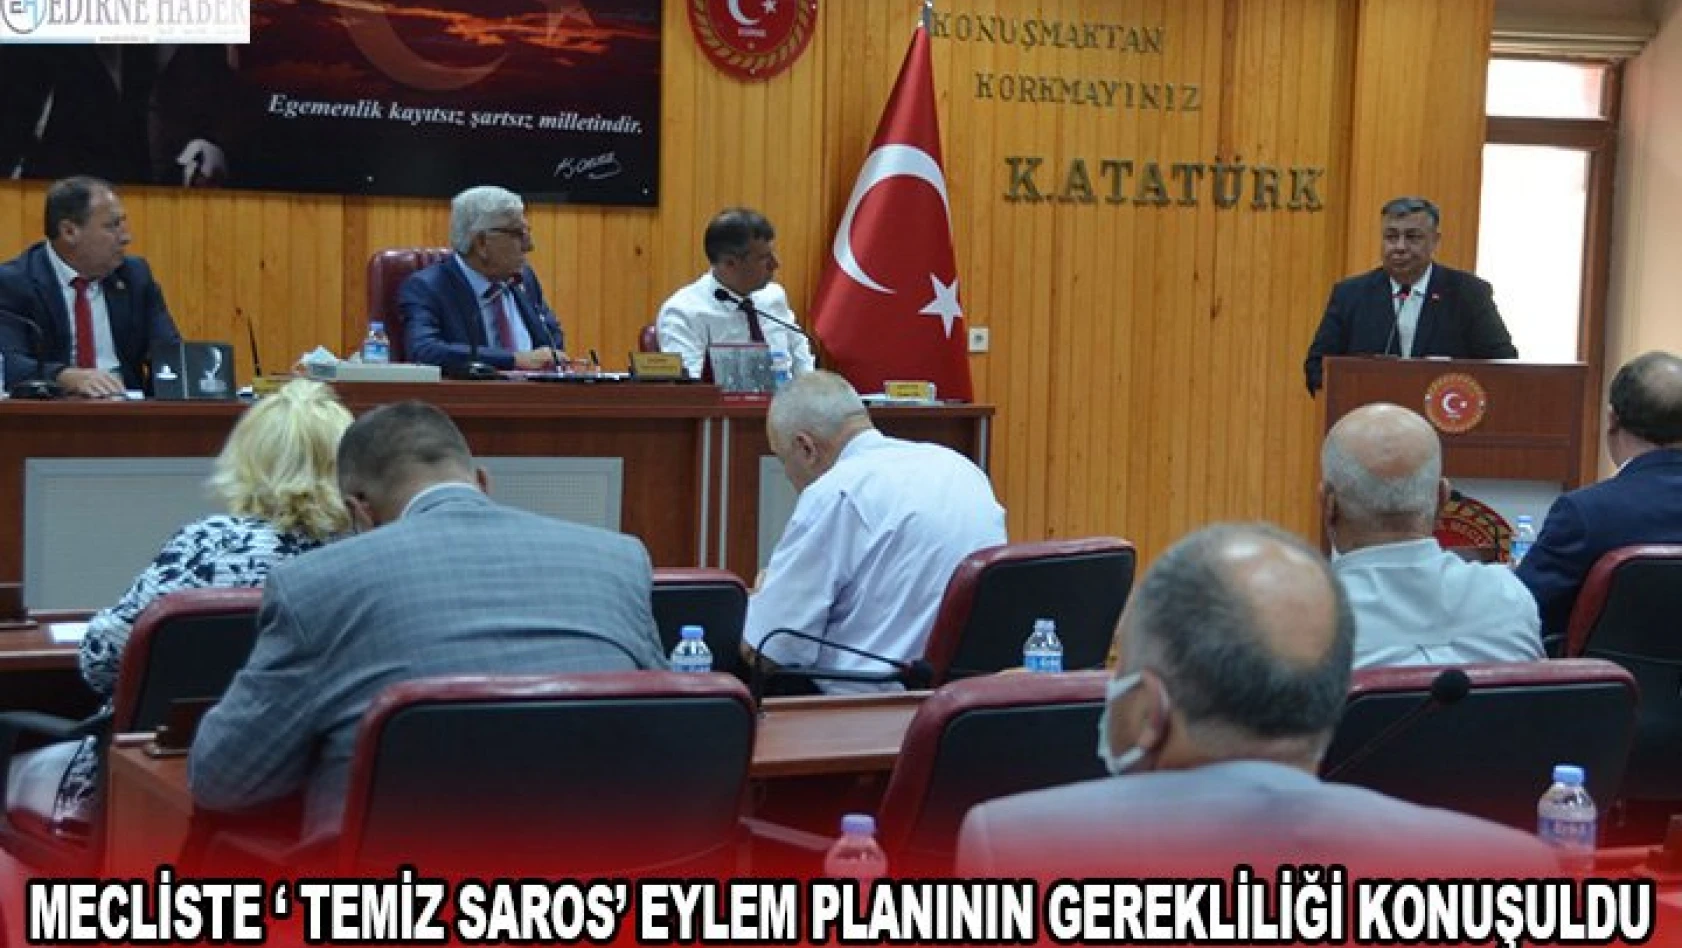 Mecliste â€˜ Temiz Saros' eylem planının gerekliliği konuşuldu